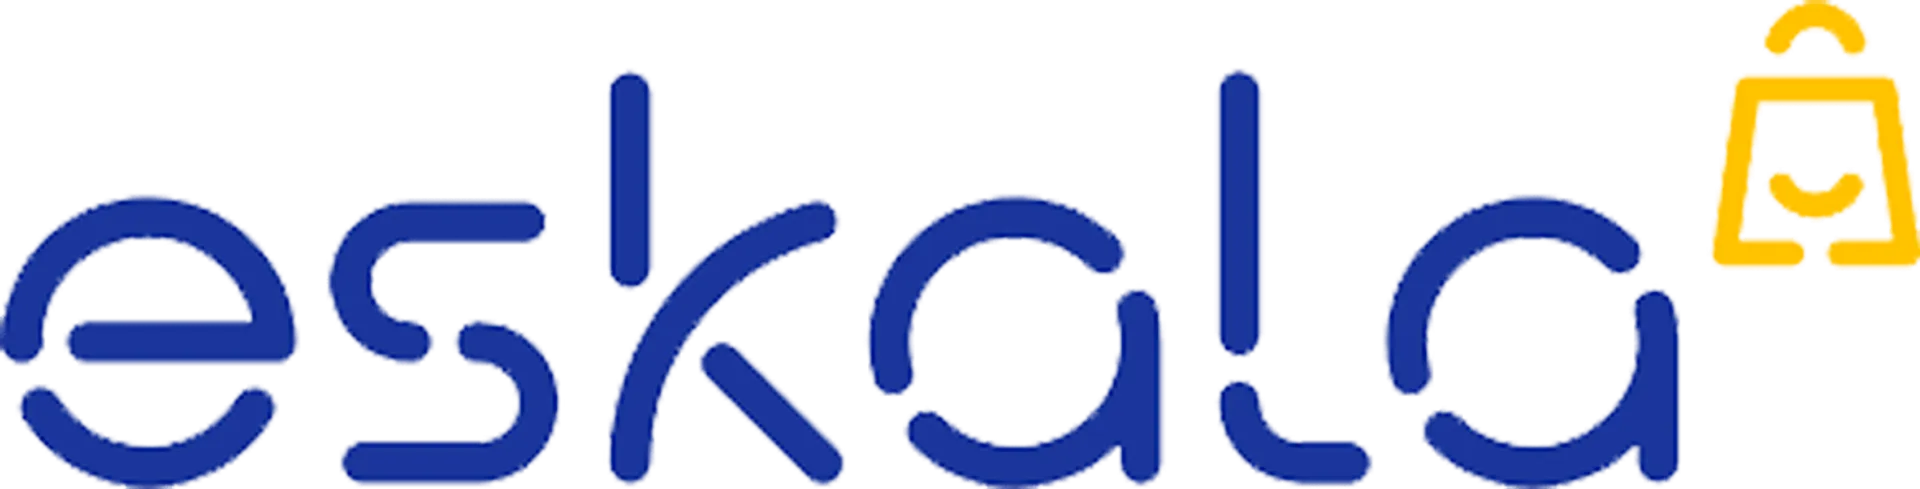 ESKALA logo